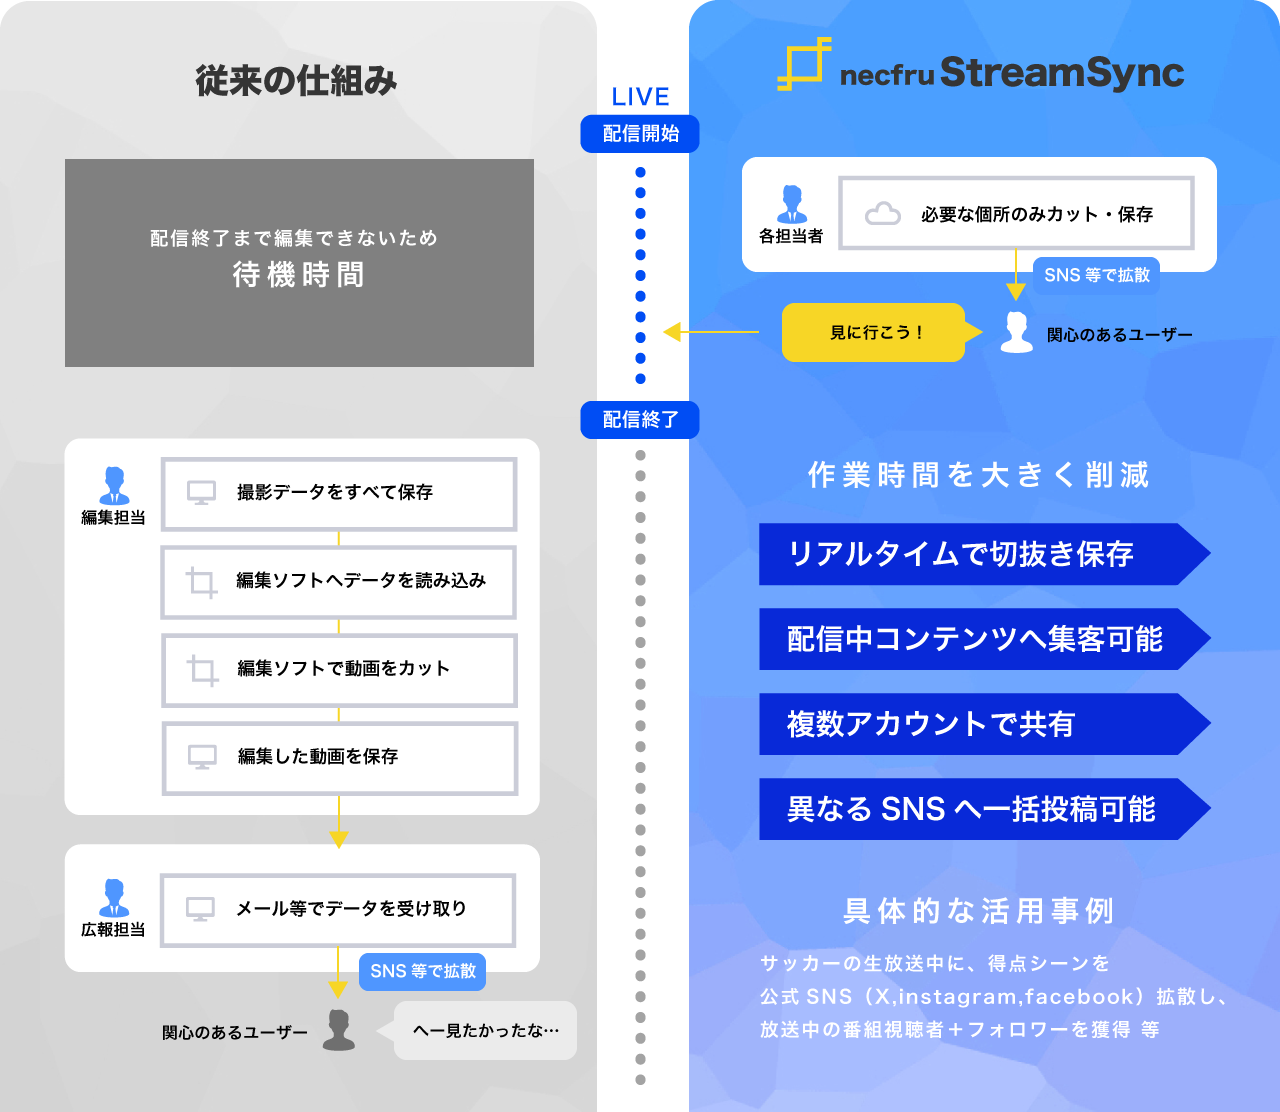 従来の仕組みとnecfru StreamSyncを使った場合のイメージ